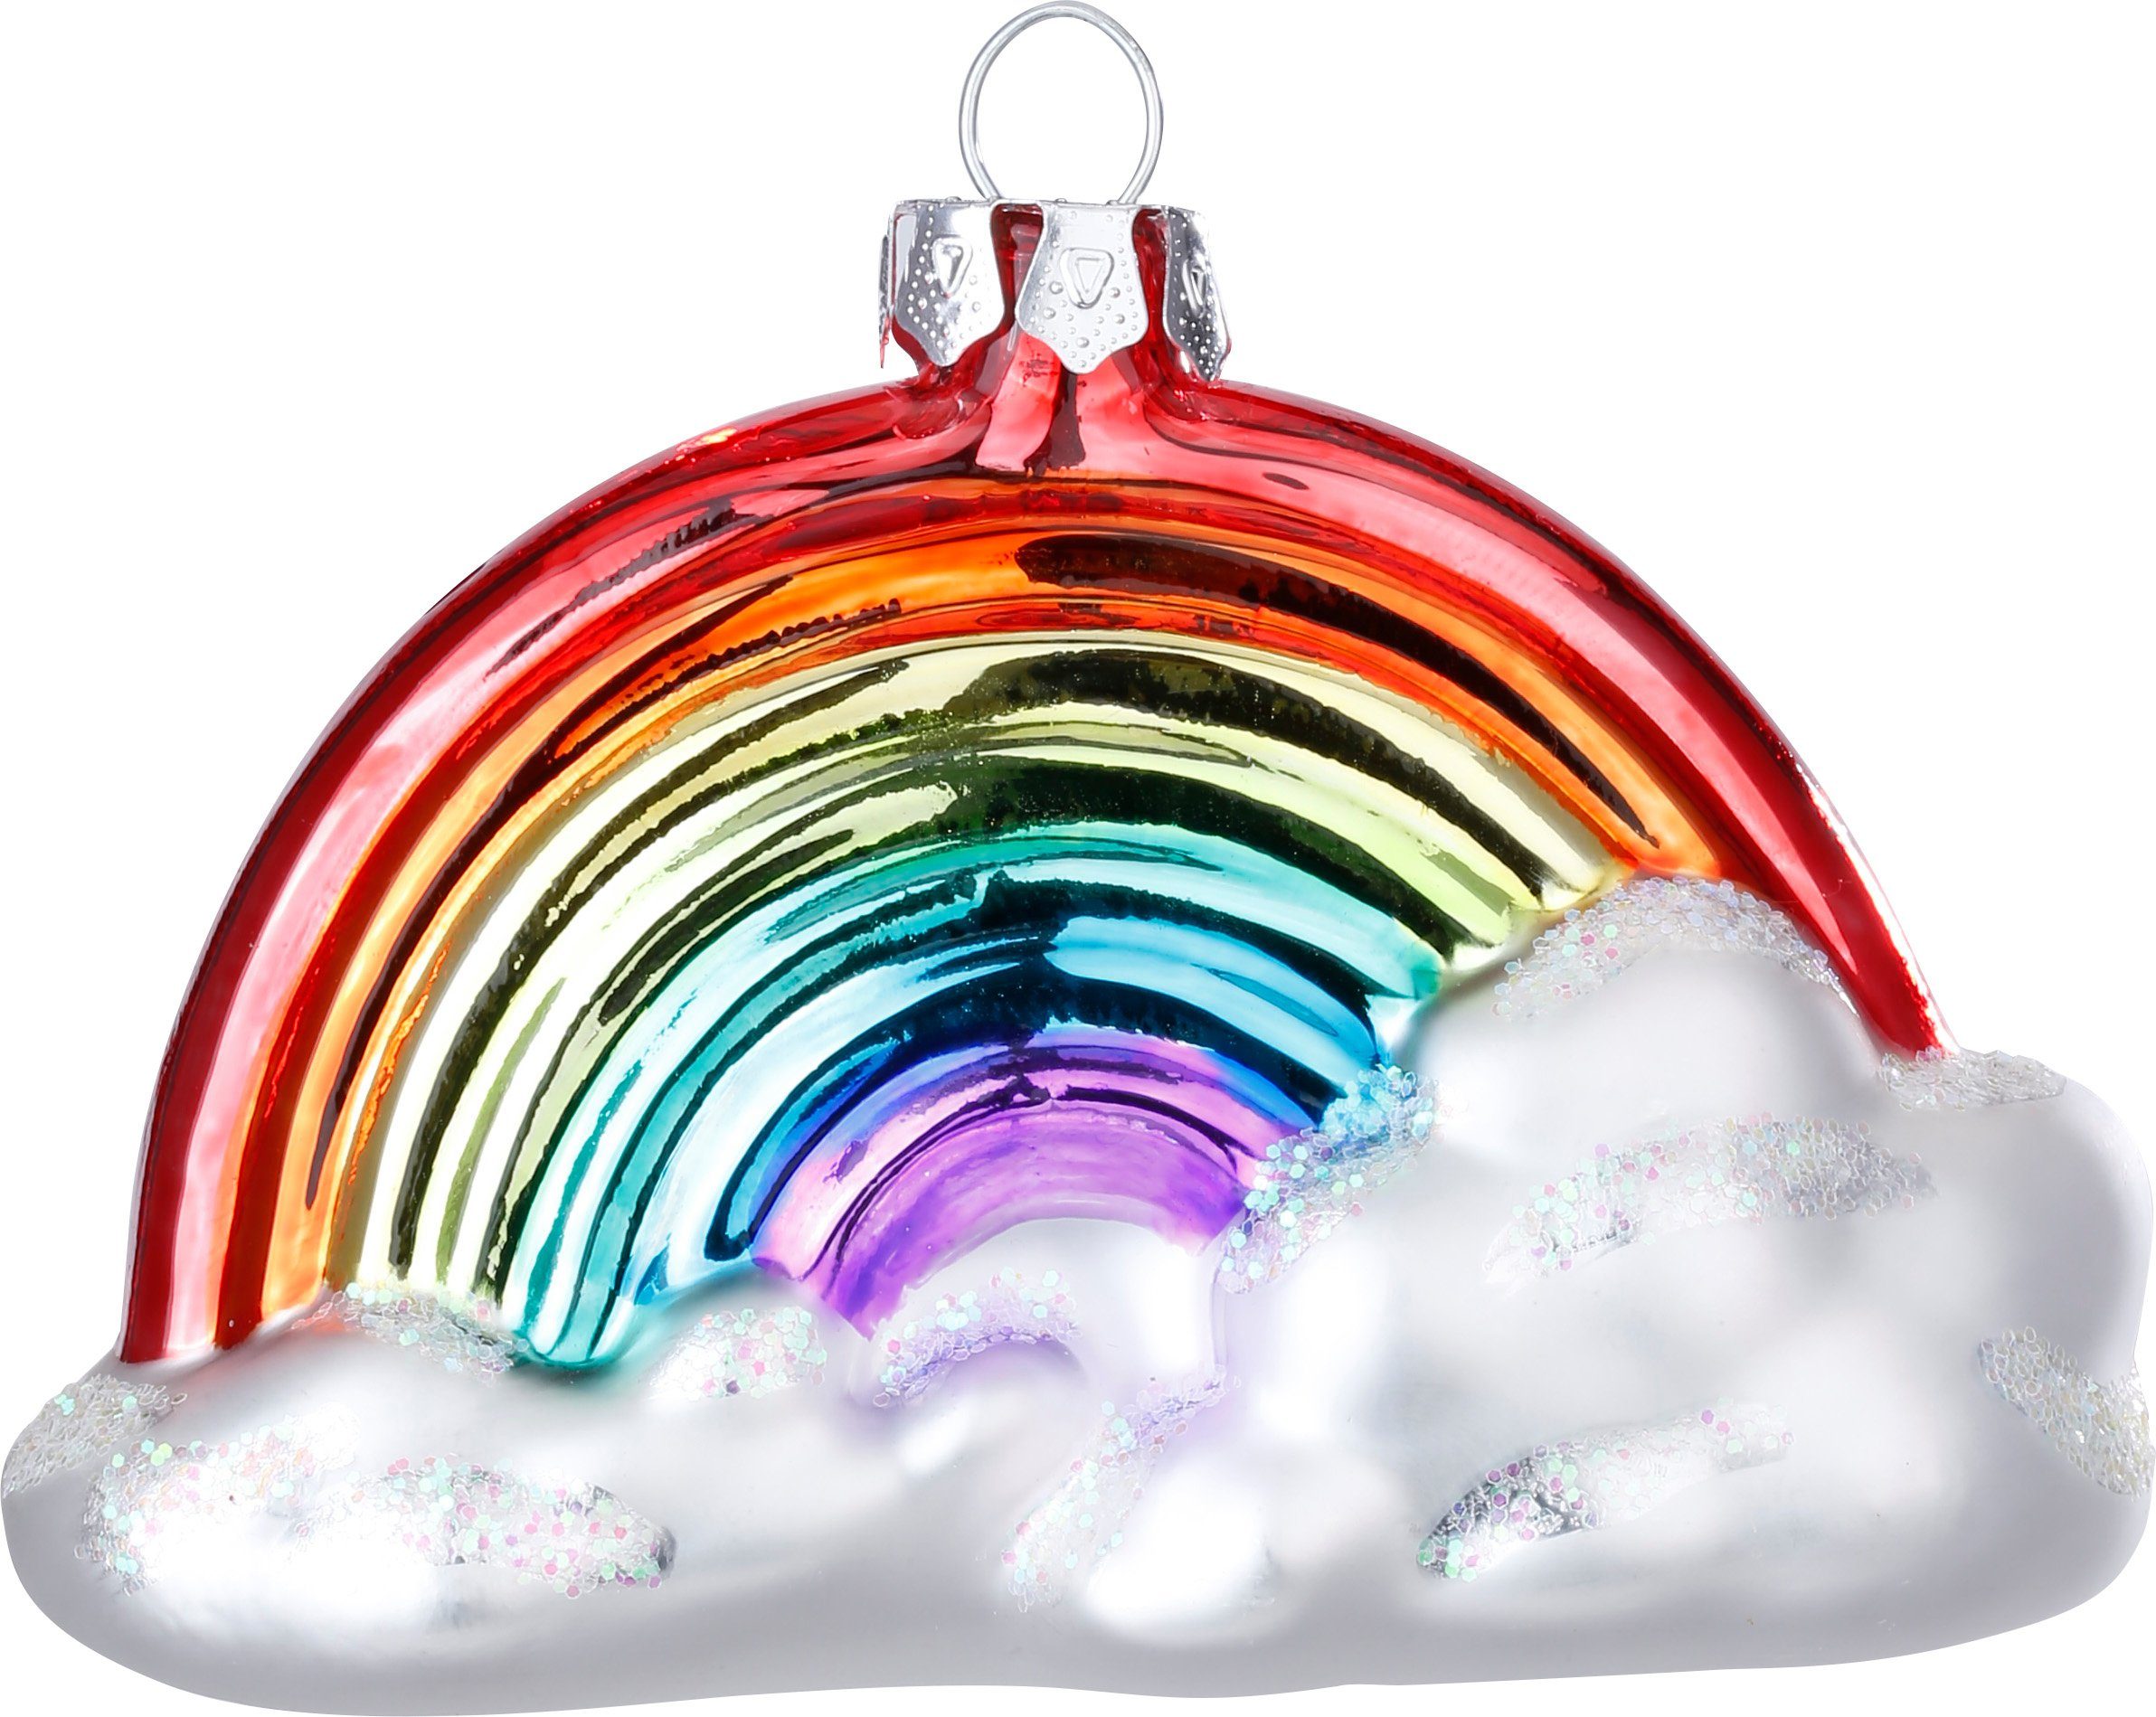 MAGIC by Inge Christbaumschmuck, Christbaumschmuck Glas Regenbogen mit Wolke 10cm bunt